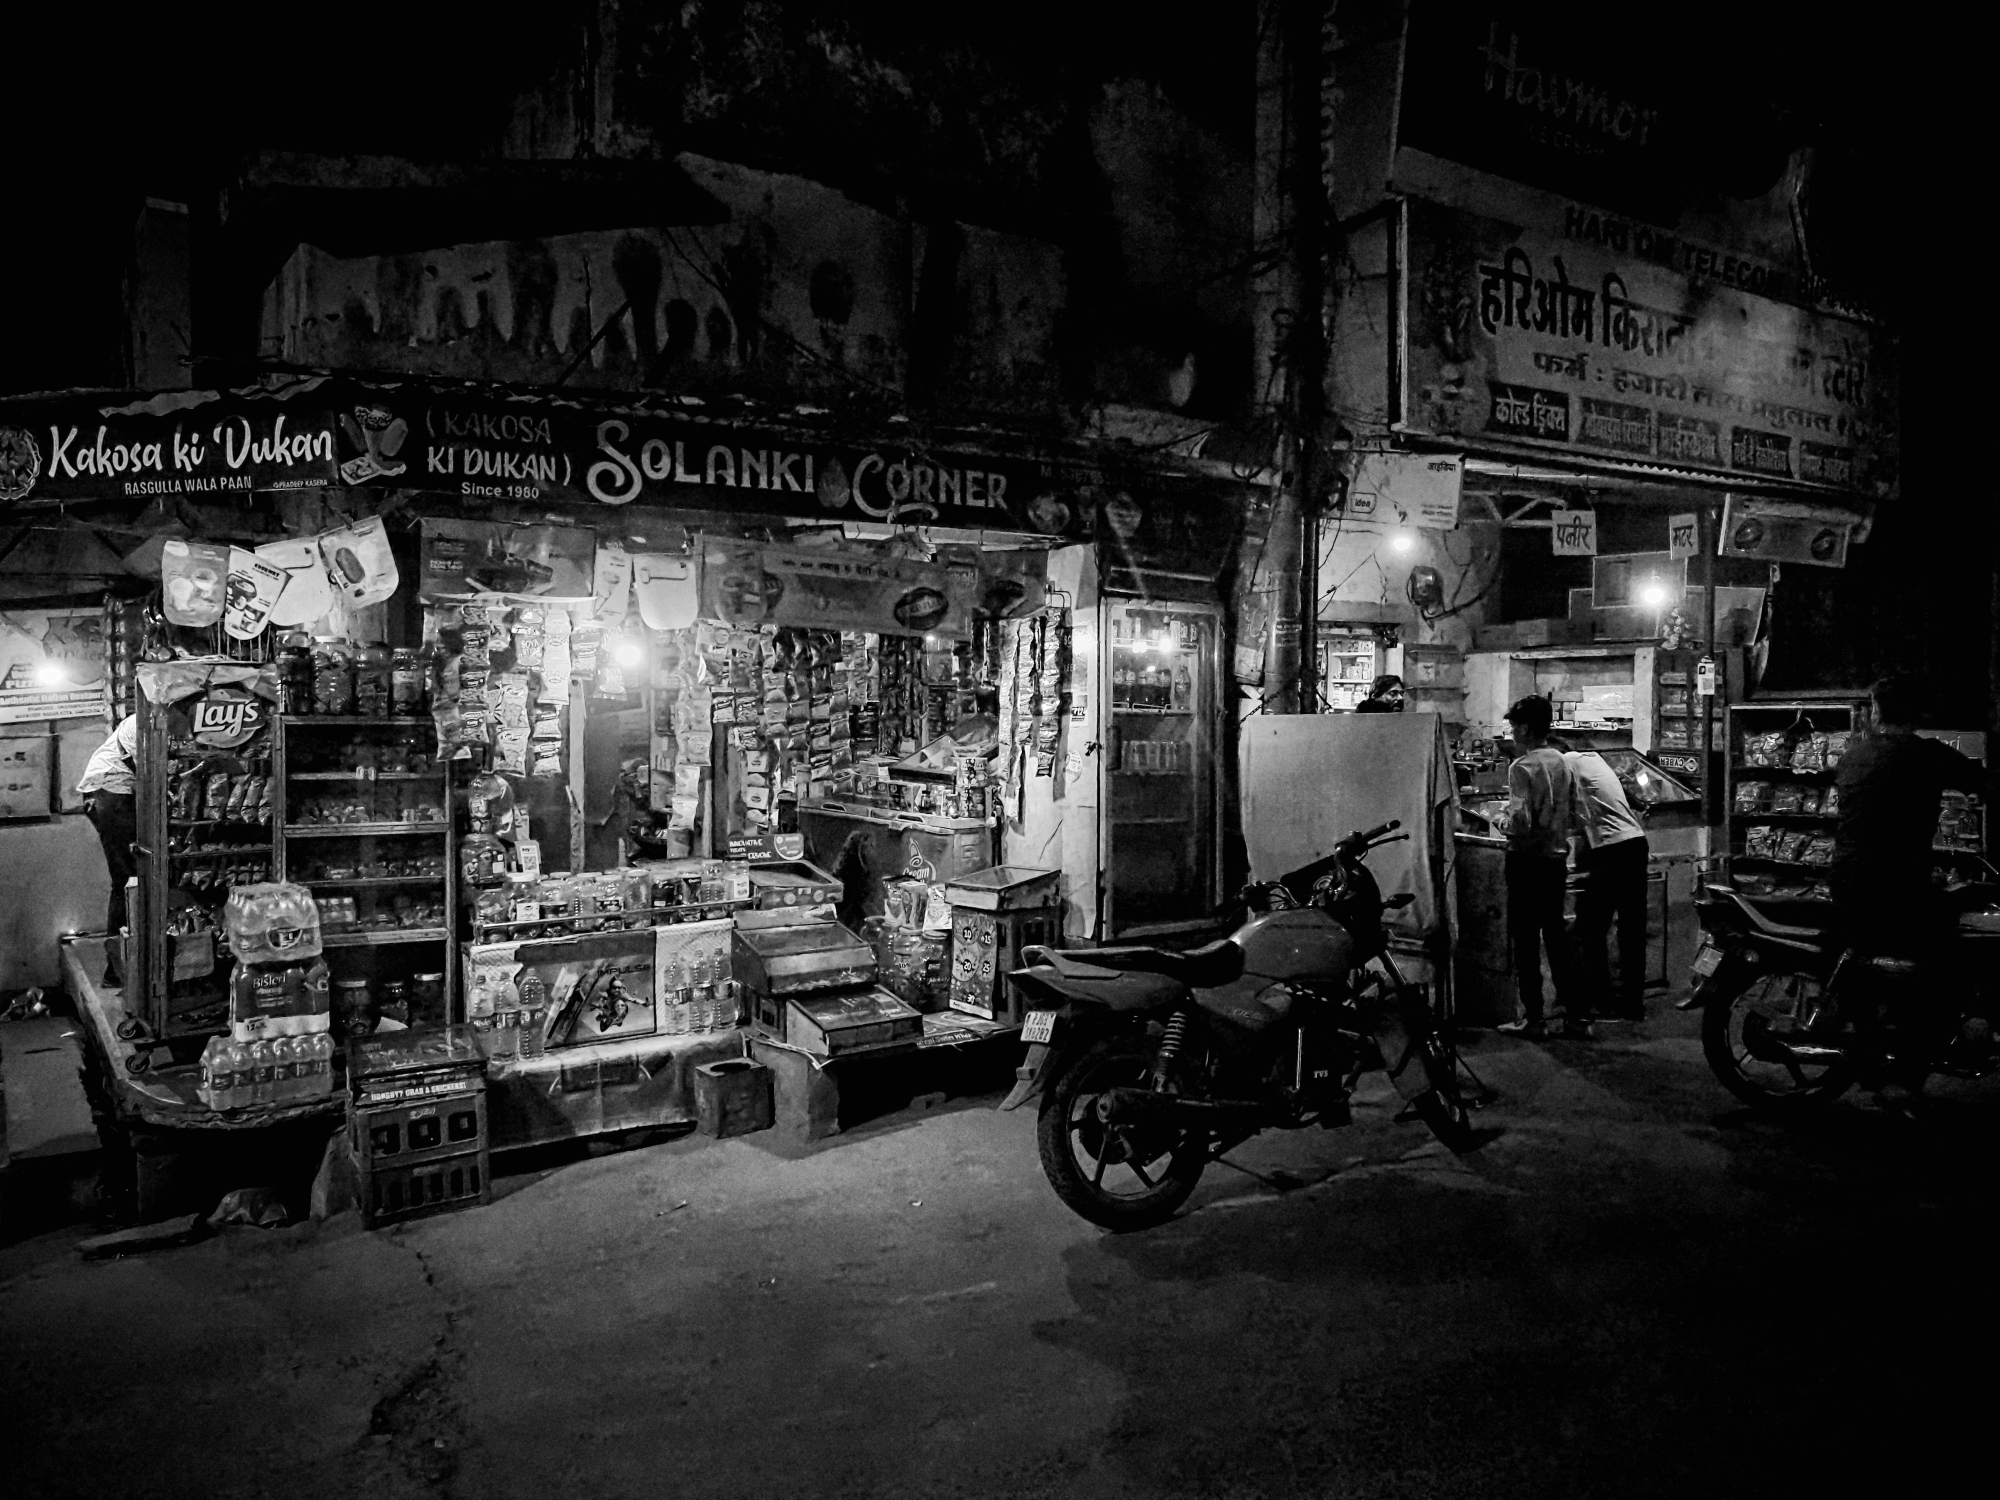 [Photos_de_nuit]  ☞ Promenade nocturne indienne Pb110012